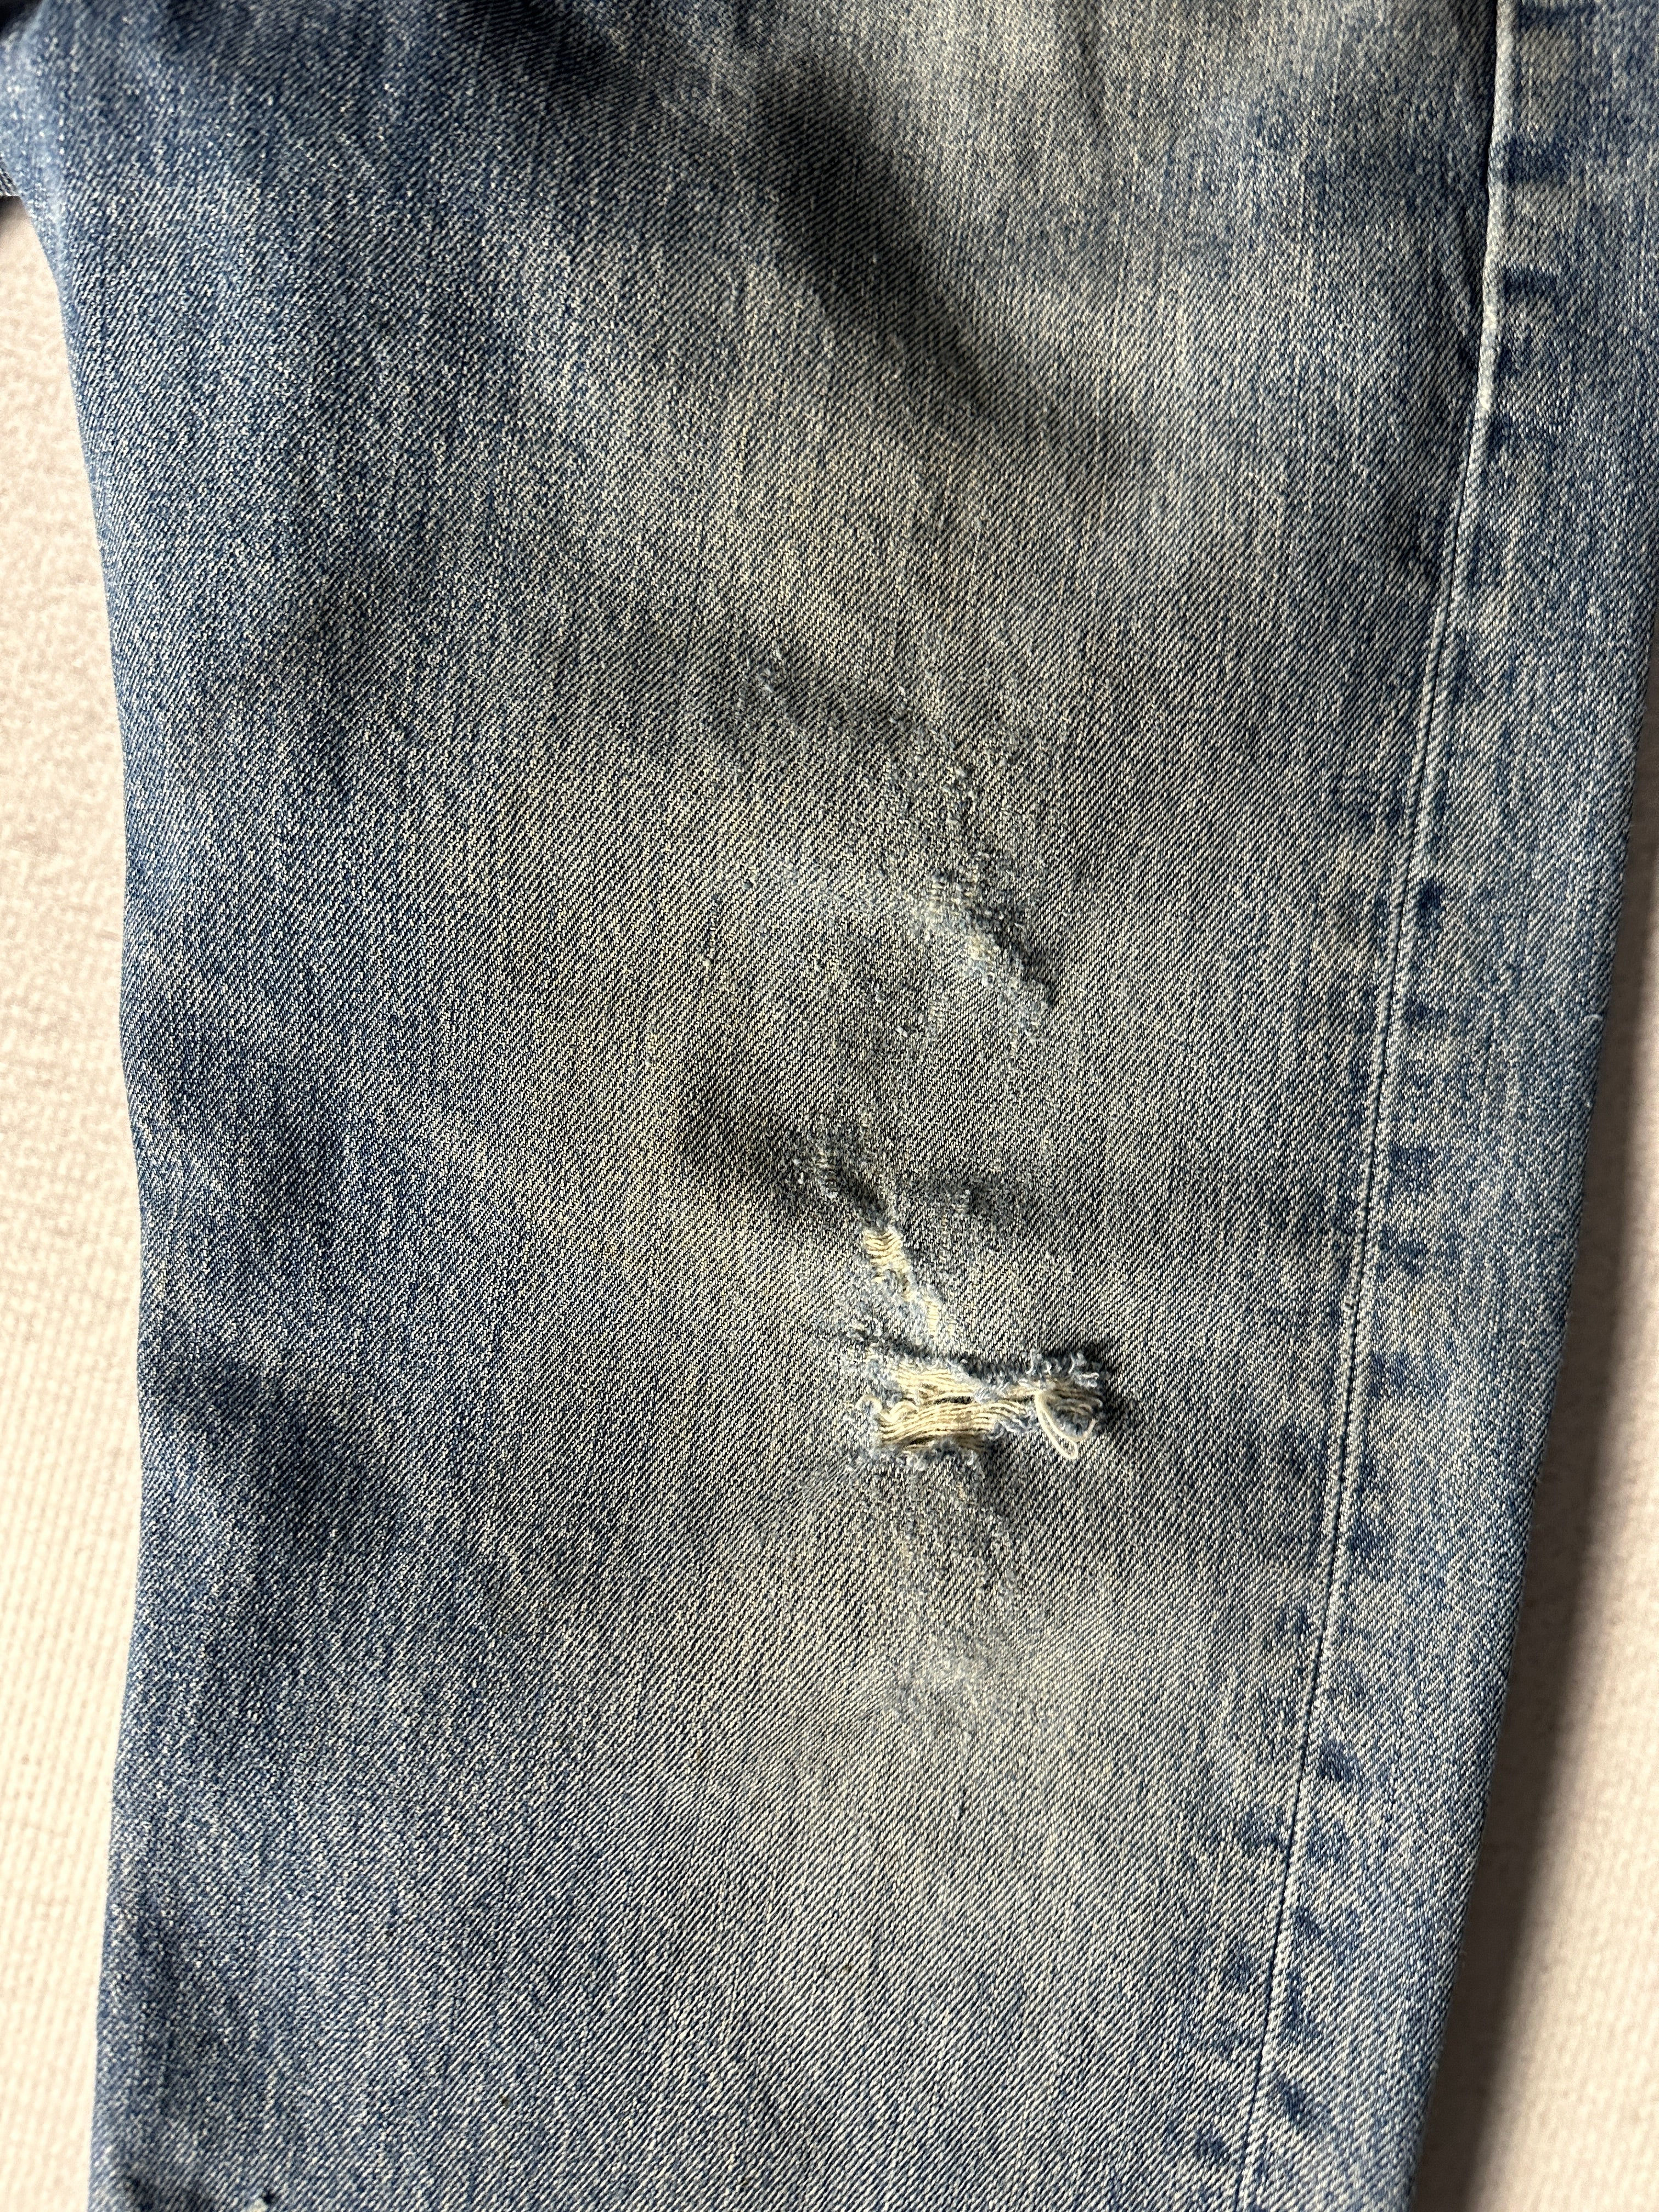 Vintage Levis Distressed 501 Jeans - Men's 40Wx32L